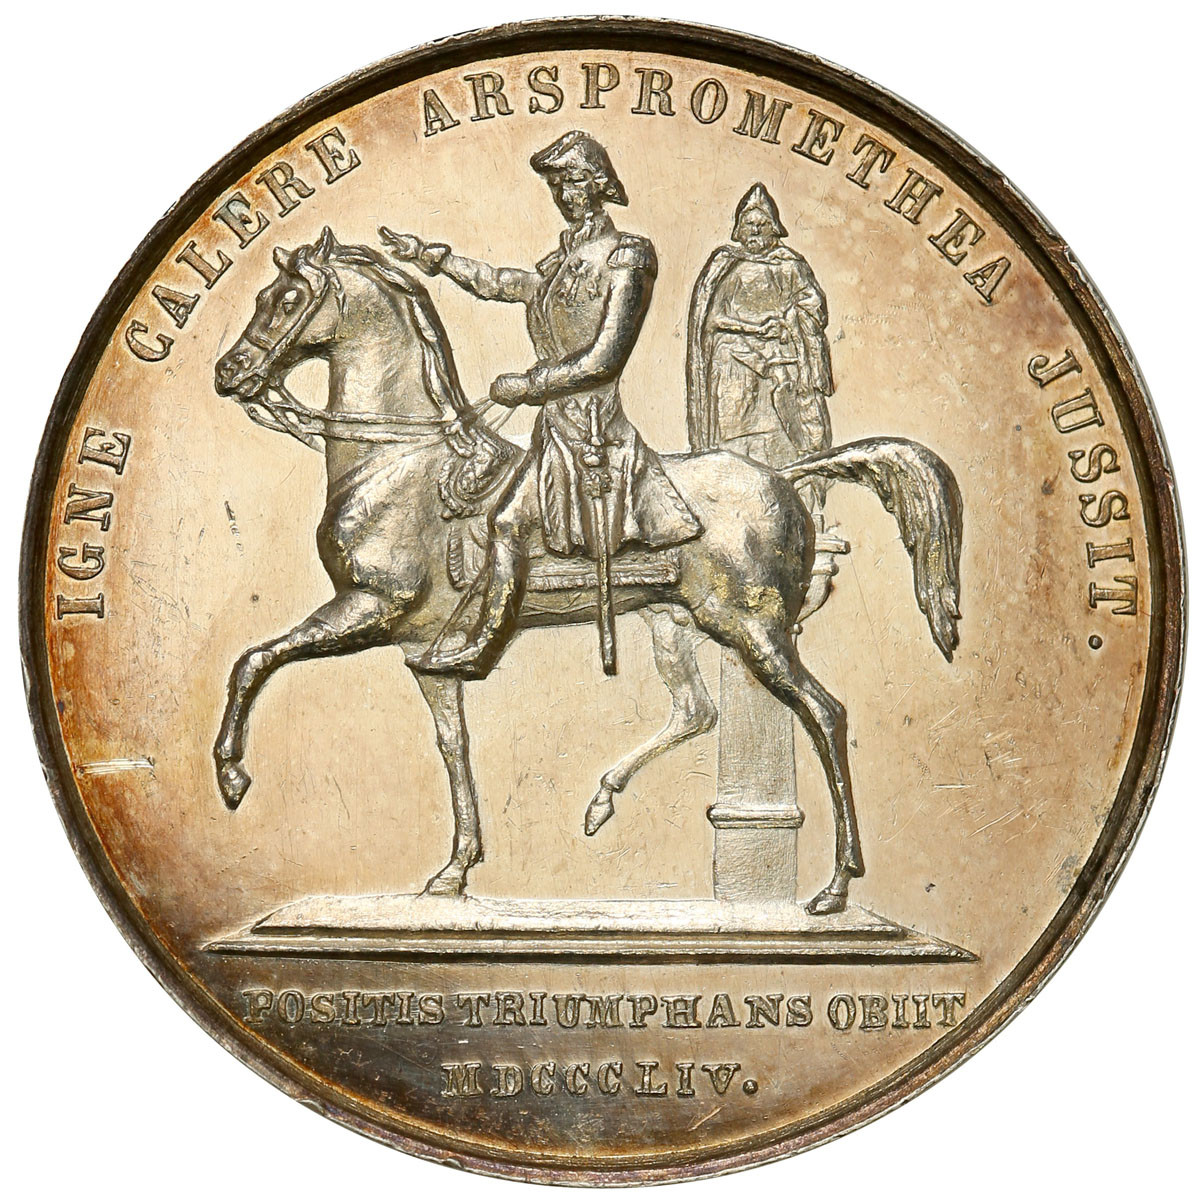 Szwecja. Medal 1844 – Fogelberg, srebro